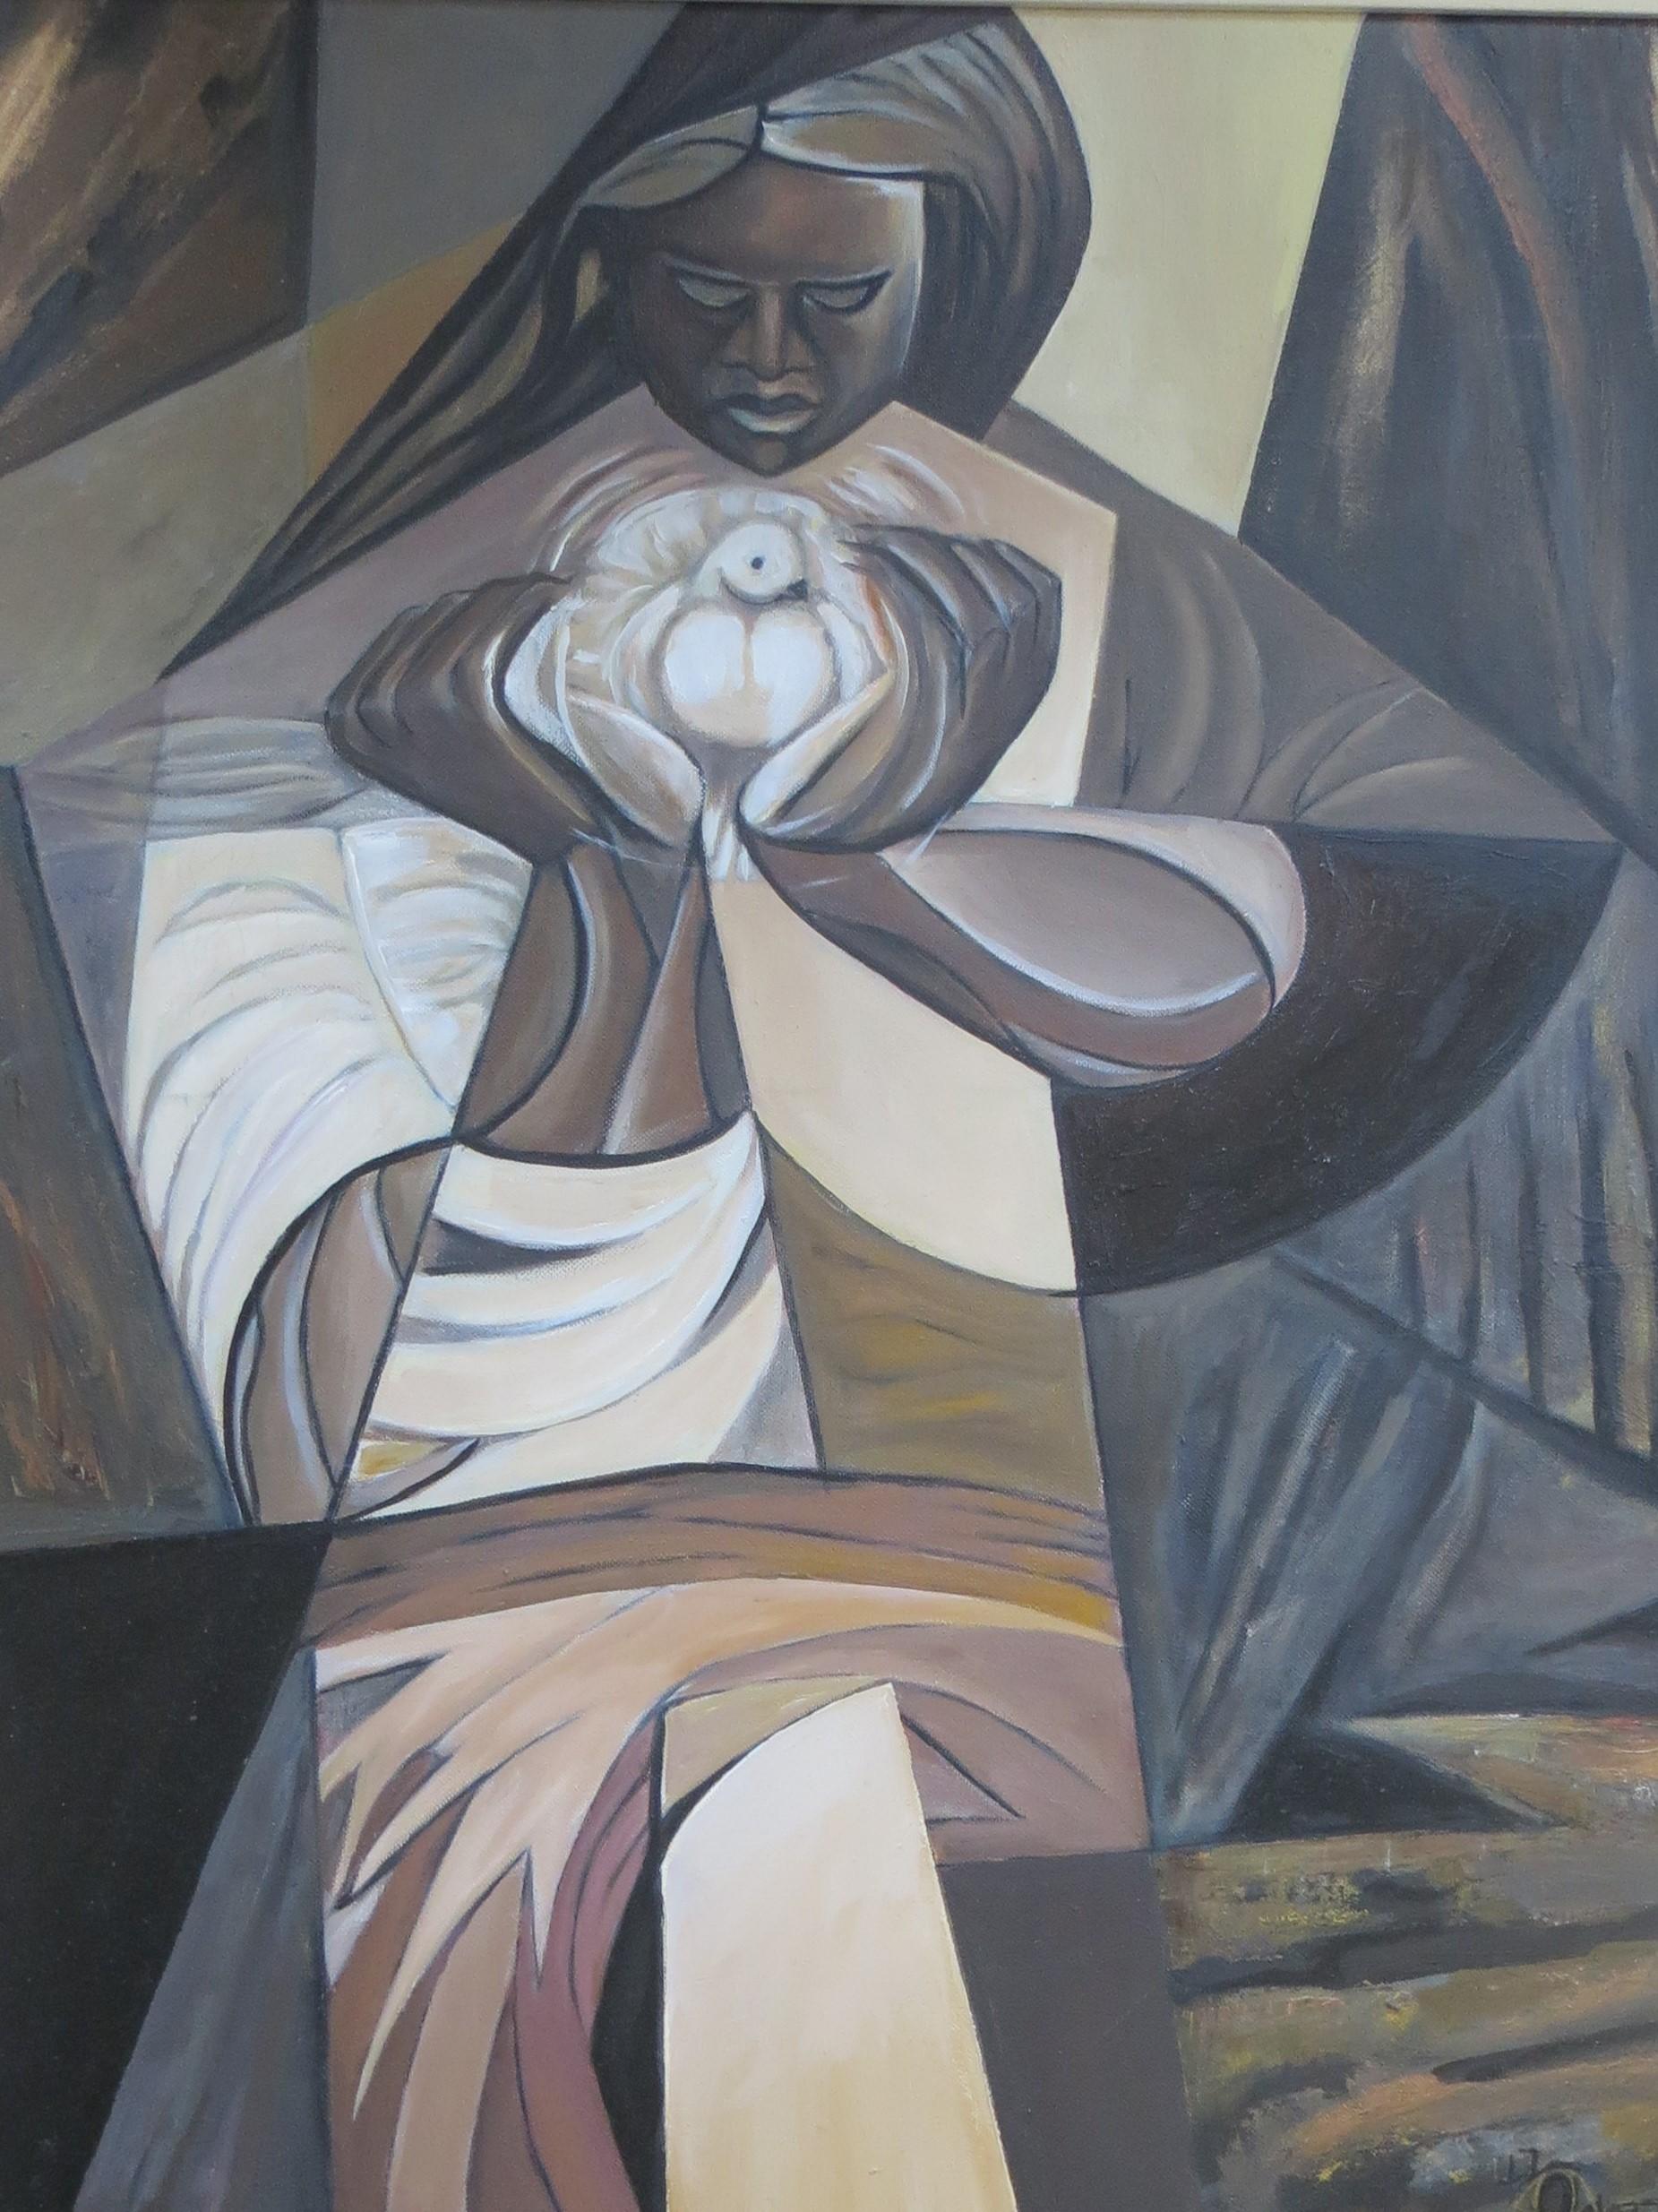 Ein schönes Ölgemälde auf Leinwand, das eine schwarze Madonna mit einer Taube als Symbol der Reinheit darstellt
In einem kubistischen Stil ist dieses Stillleben reich an dunklen Farben mit einem breiten modernistischen Touch.

Das Gemälde ist